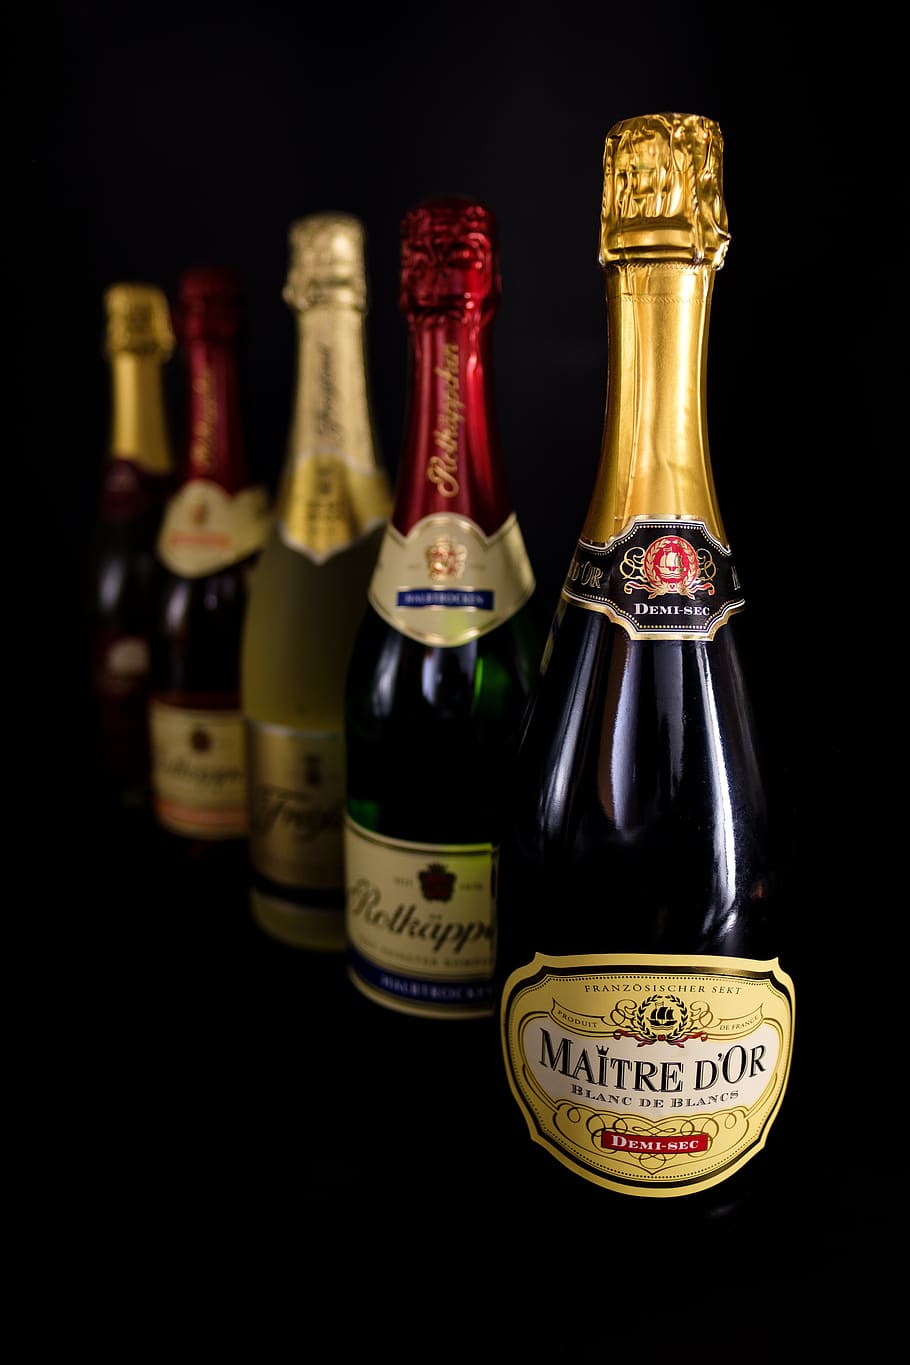 champagne, bottles, alcohol, drink, beverages, spirits, celebration, celebrate, text, bottle